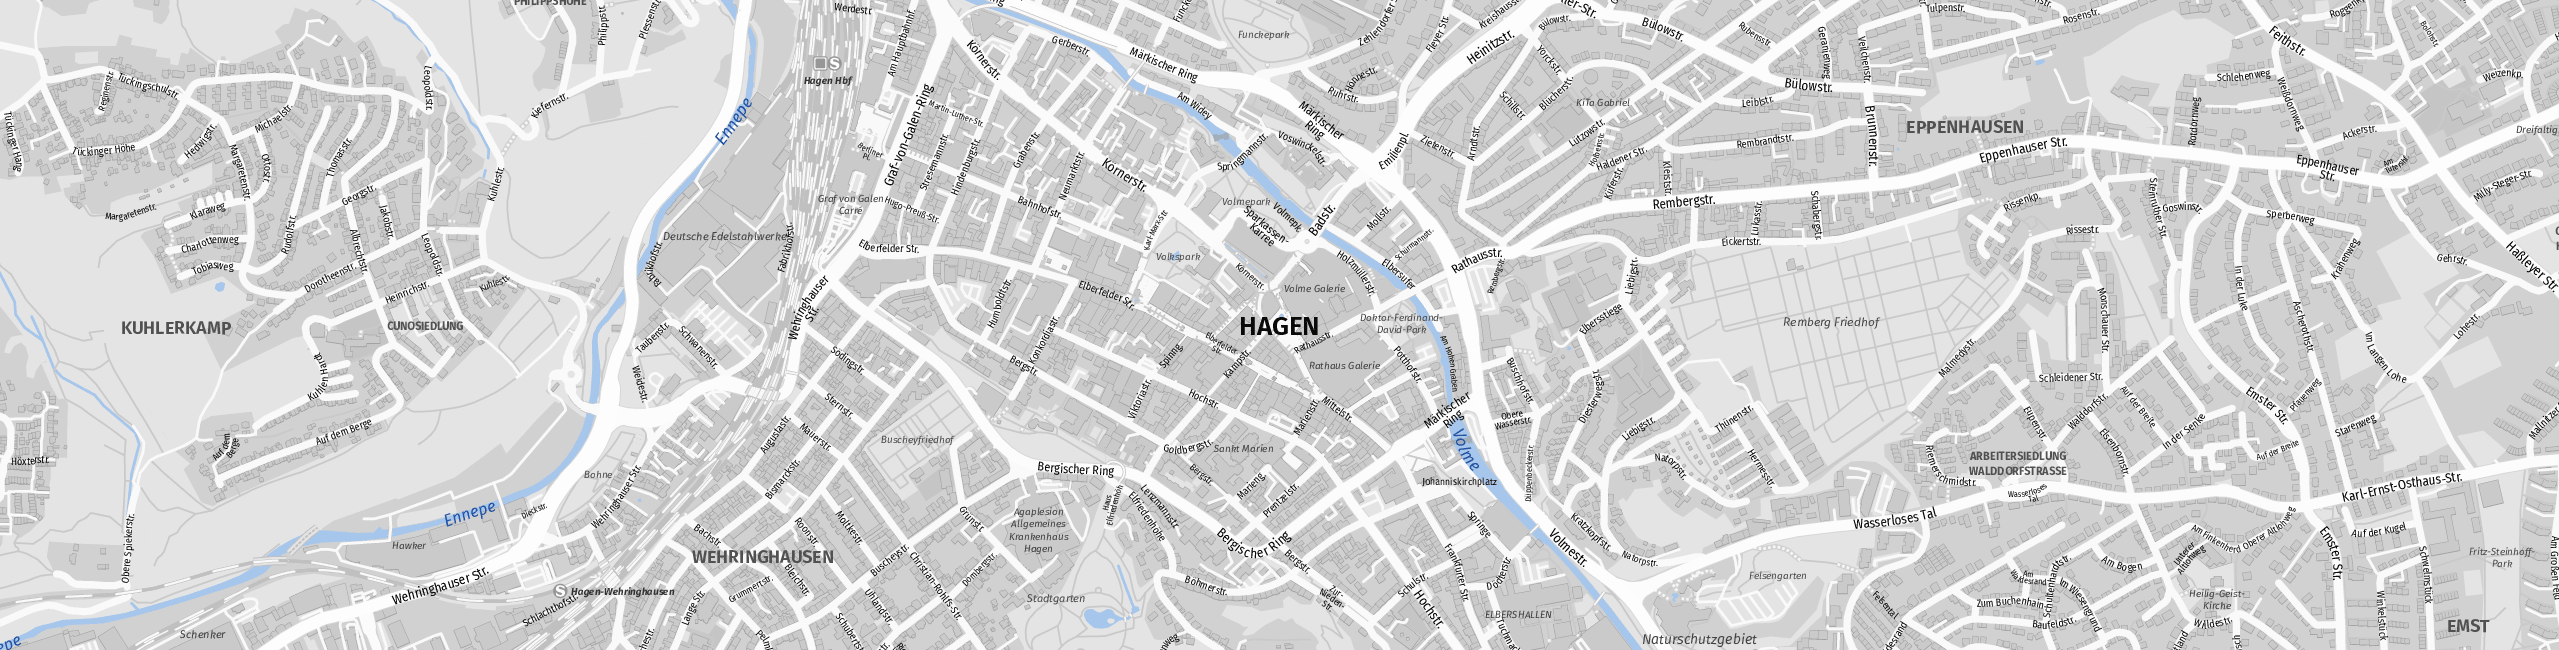 Stadtplan Hagen zum Downloaden.